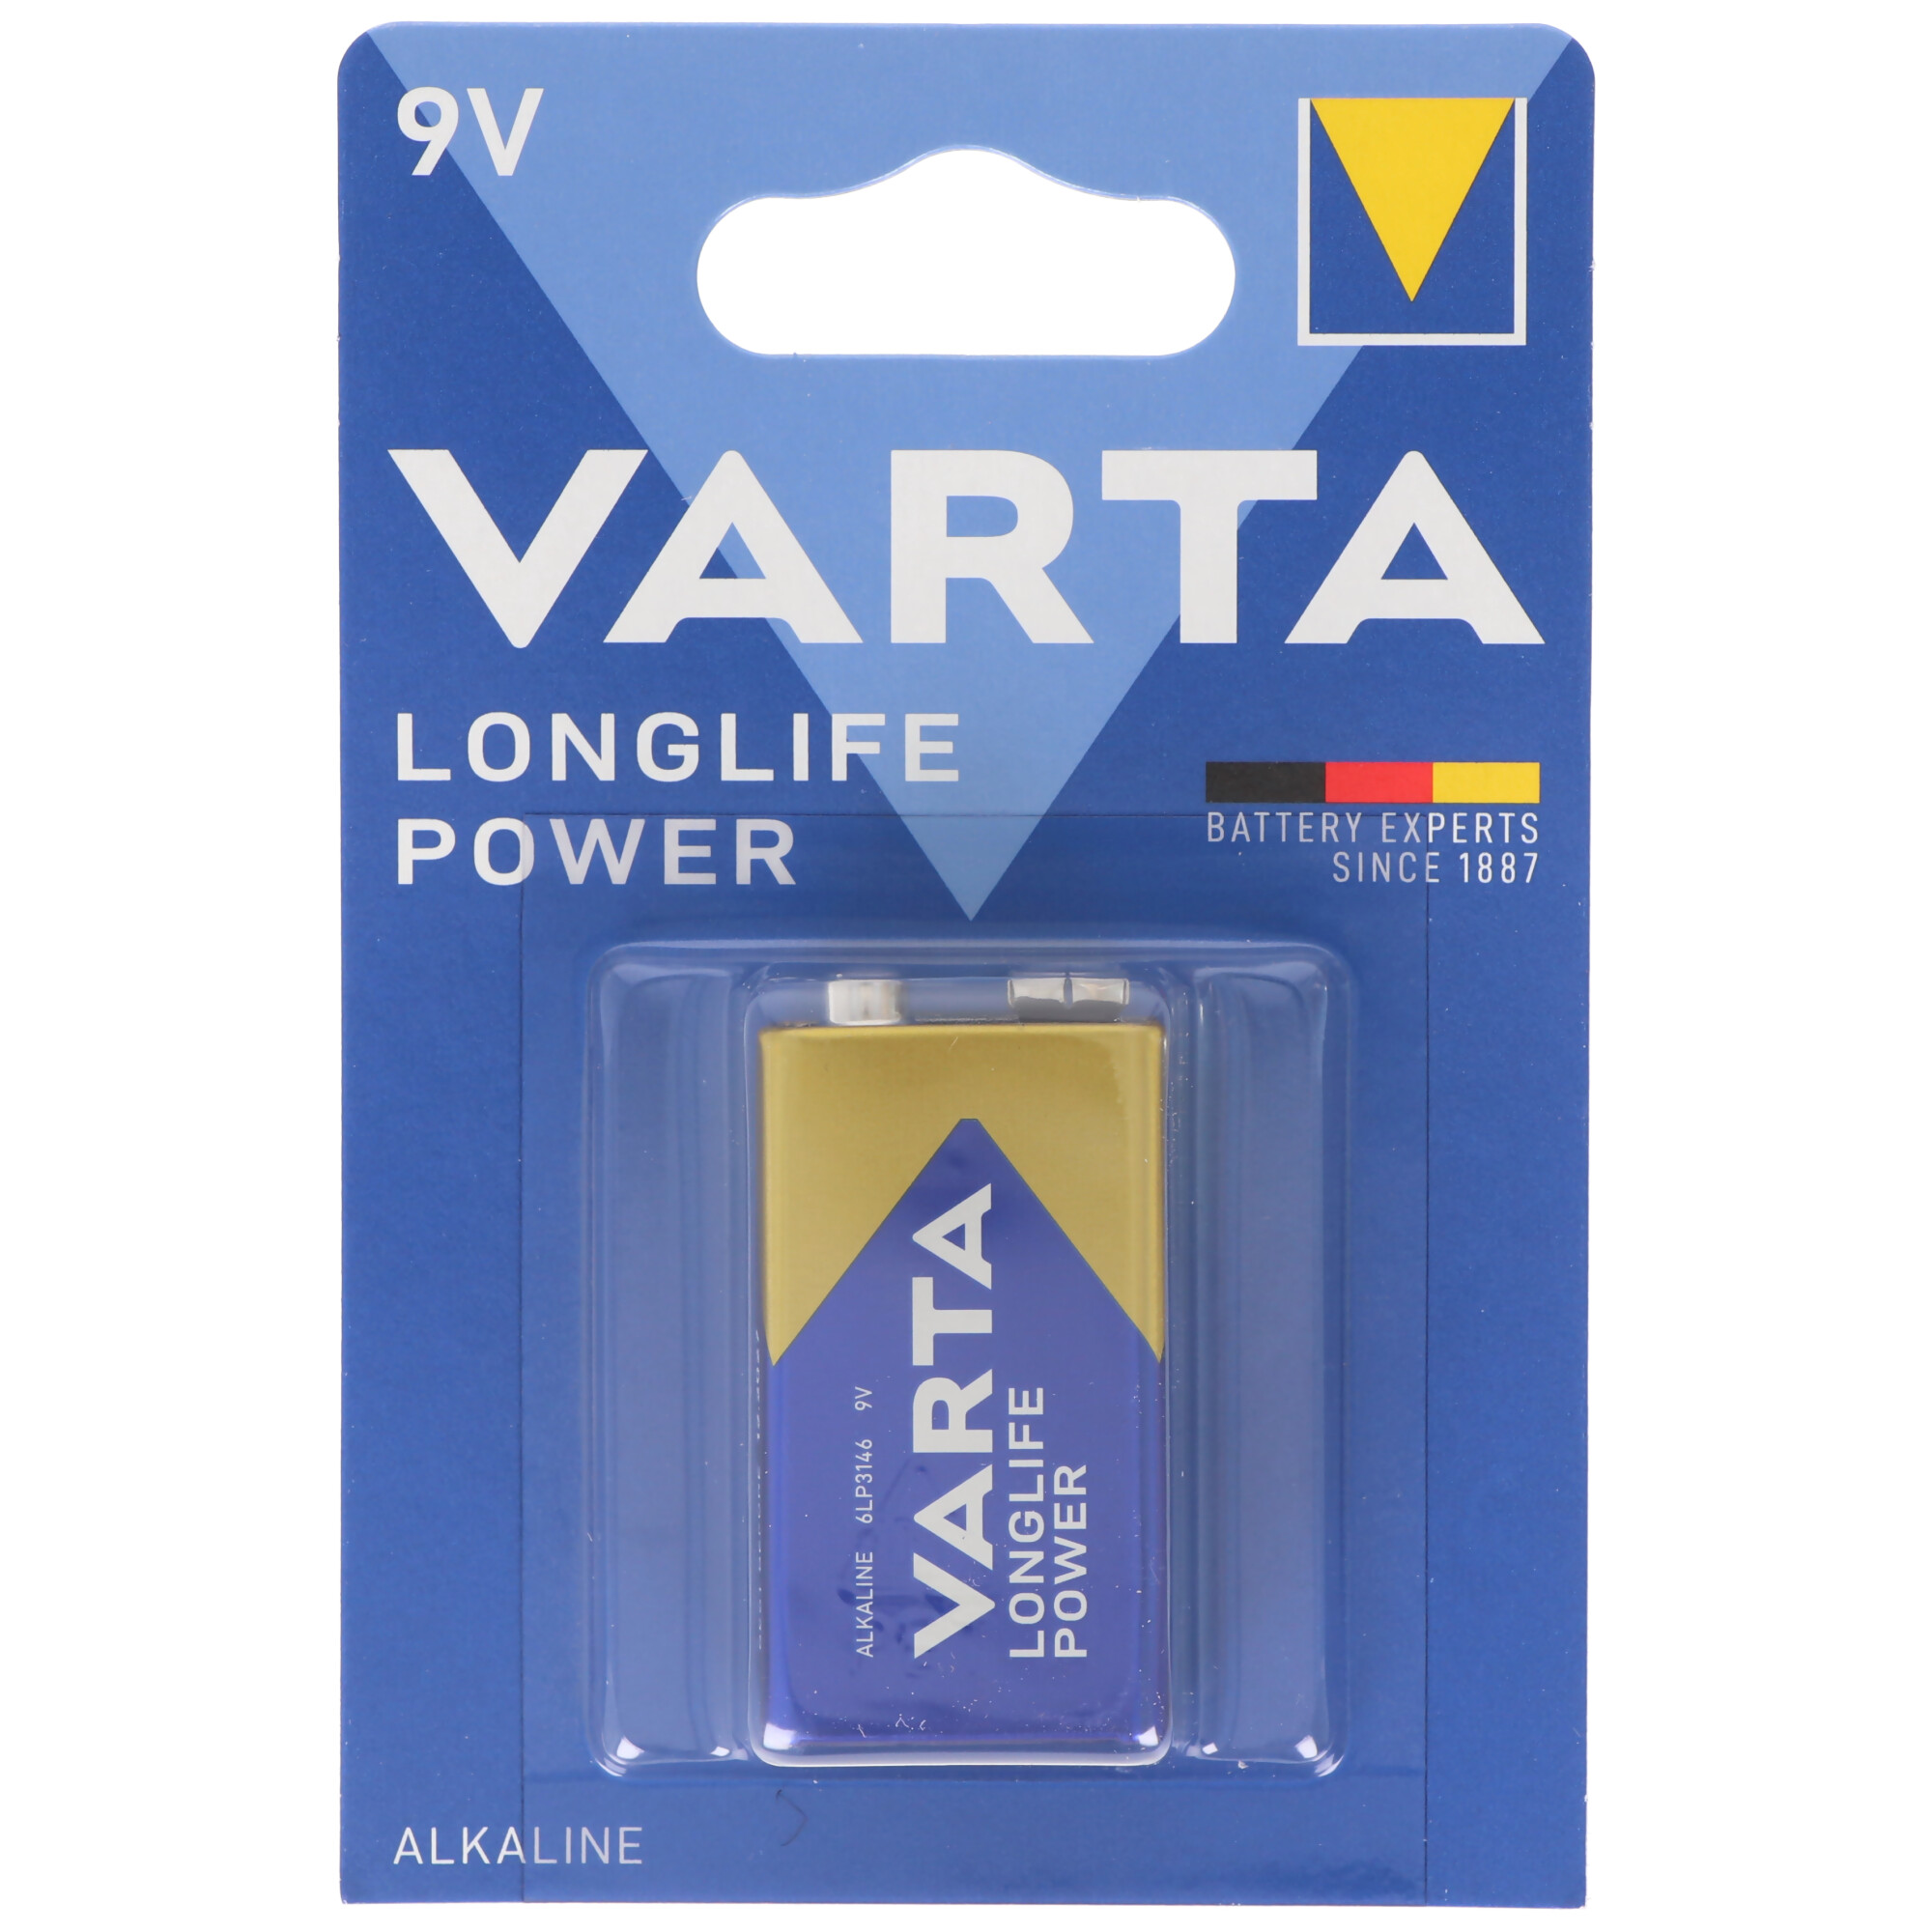 Varta Longlife Power (ehem. High Energy) 9V E-Block 4922 Batterie 1-er Blister